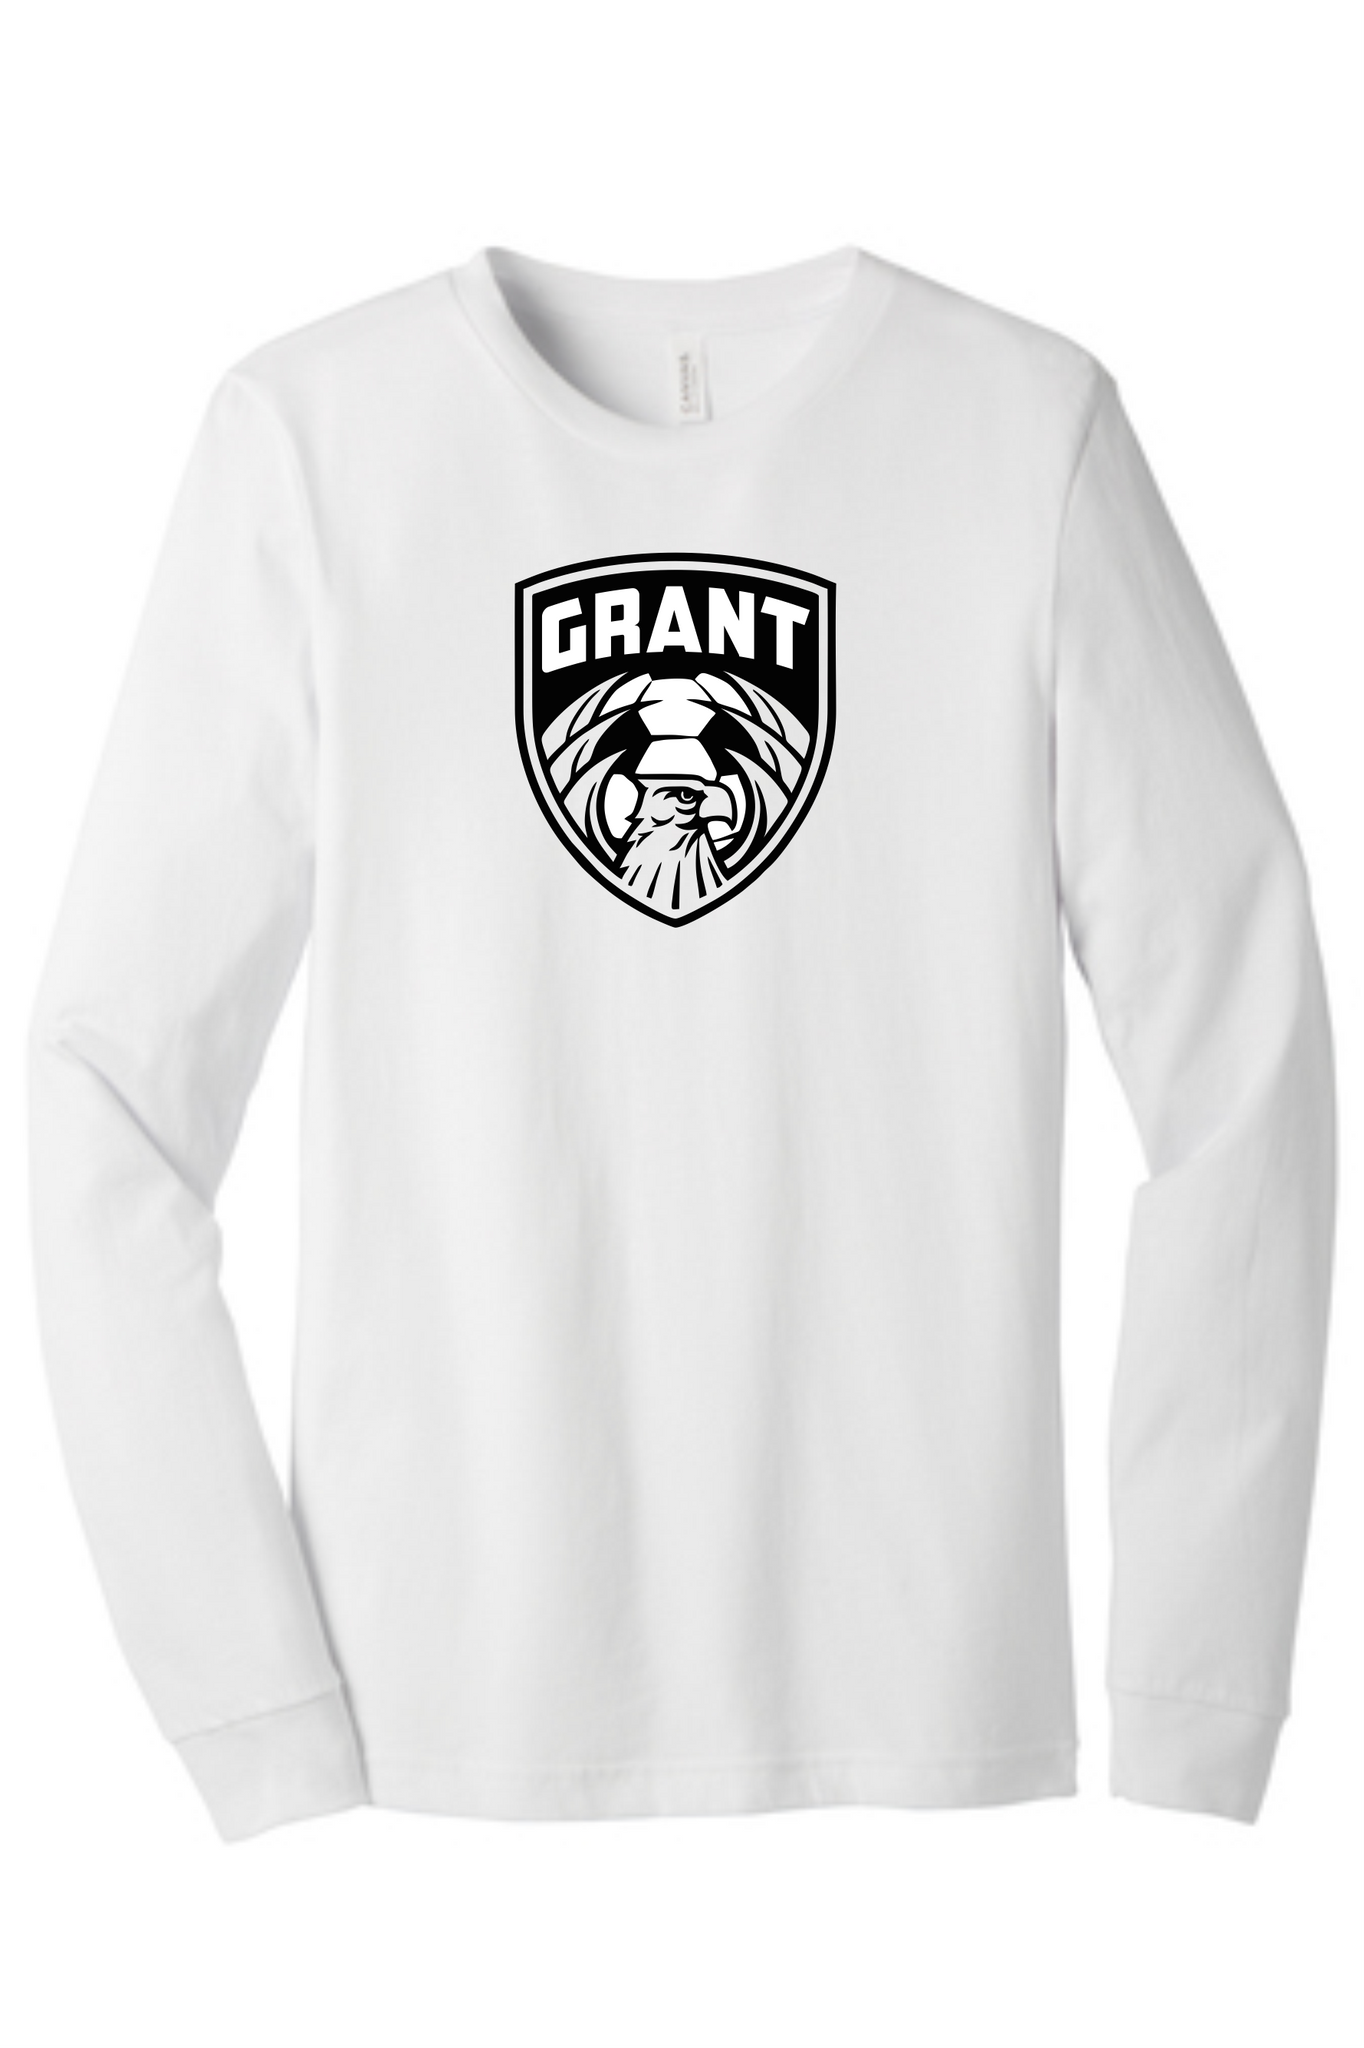 Grant MS Soccer w/Eagle